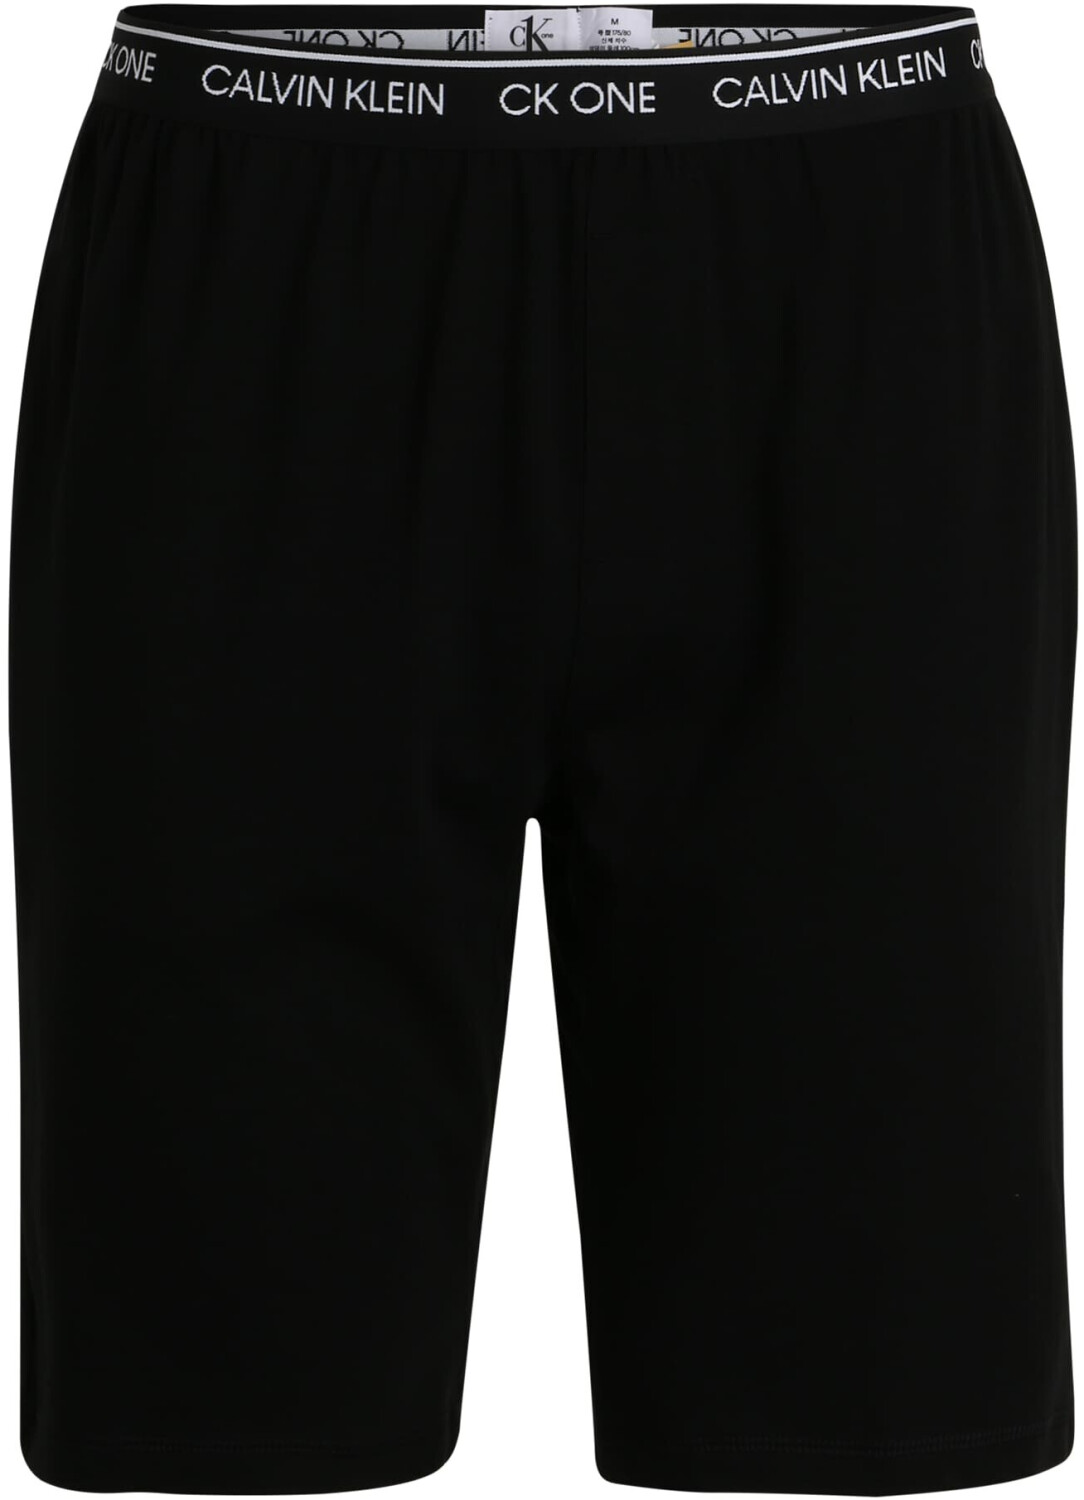 Calvin Klein CK One Sleep Shorts (000NM1795E) ab 35,99 € | Preisvergleich  bei